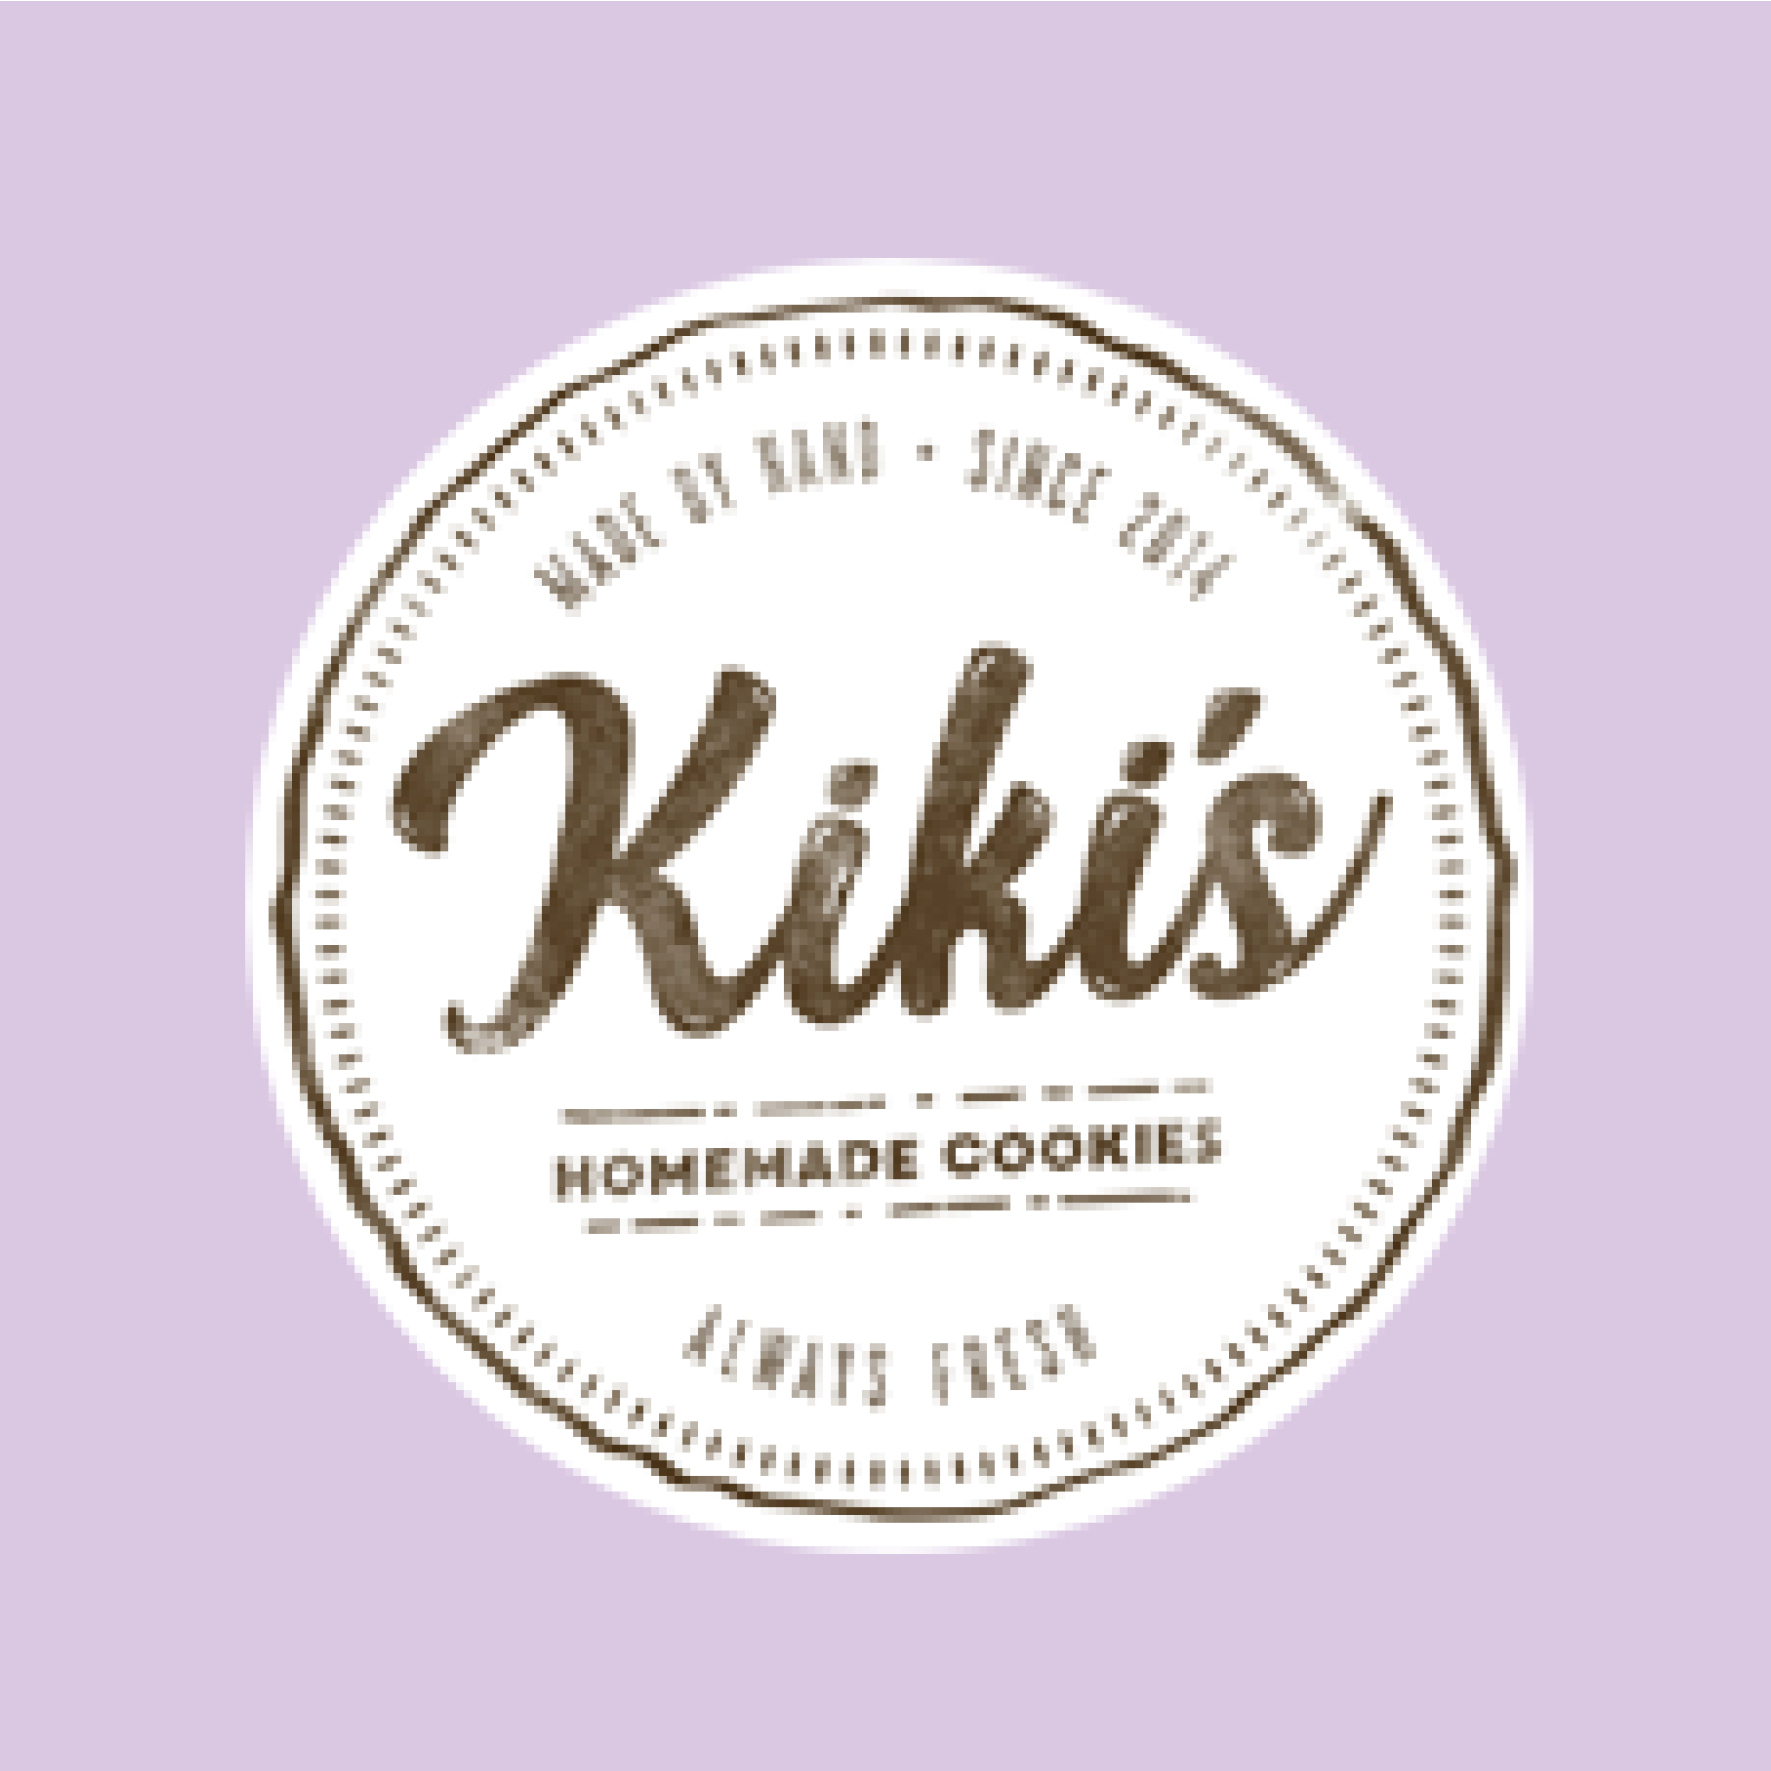 Kiki's Homemade Cookies